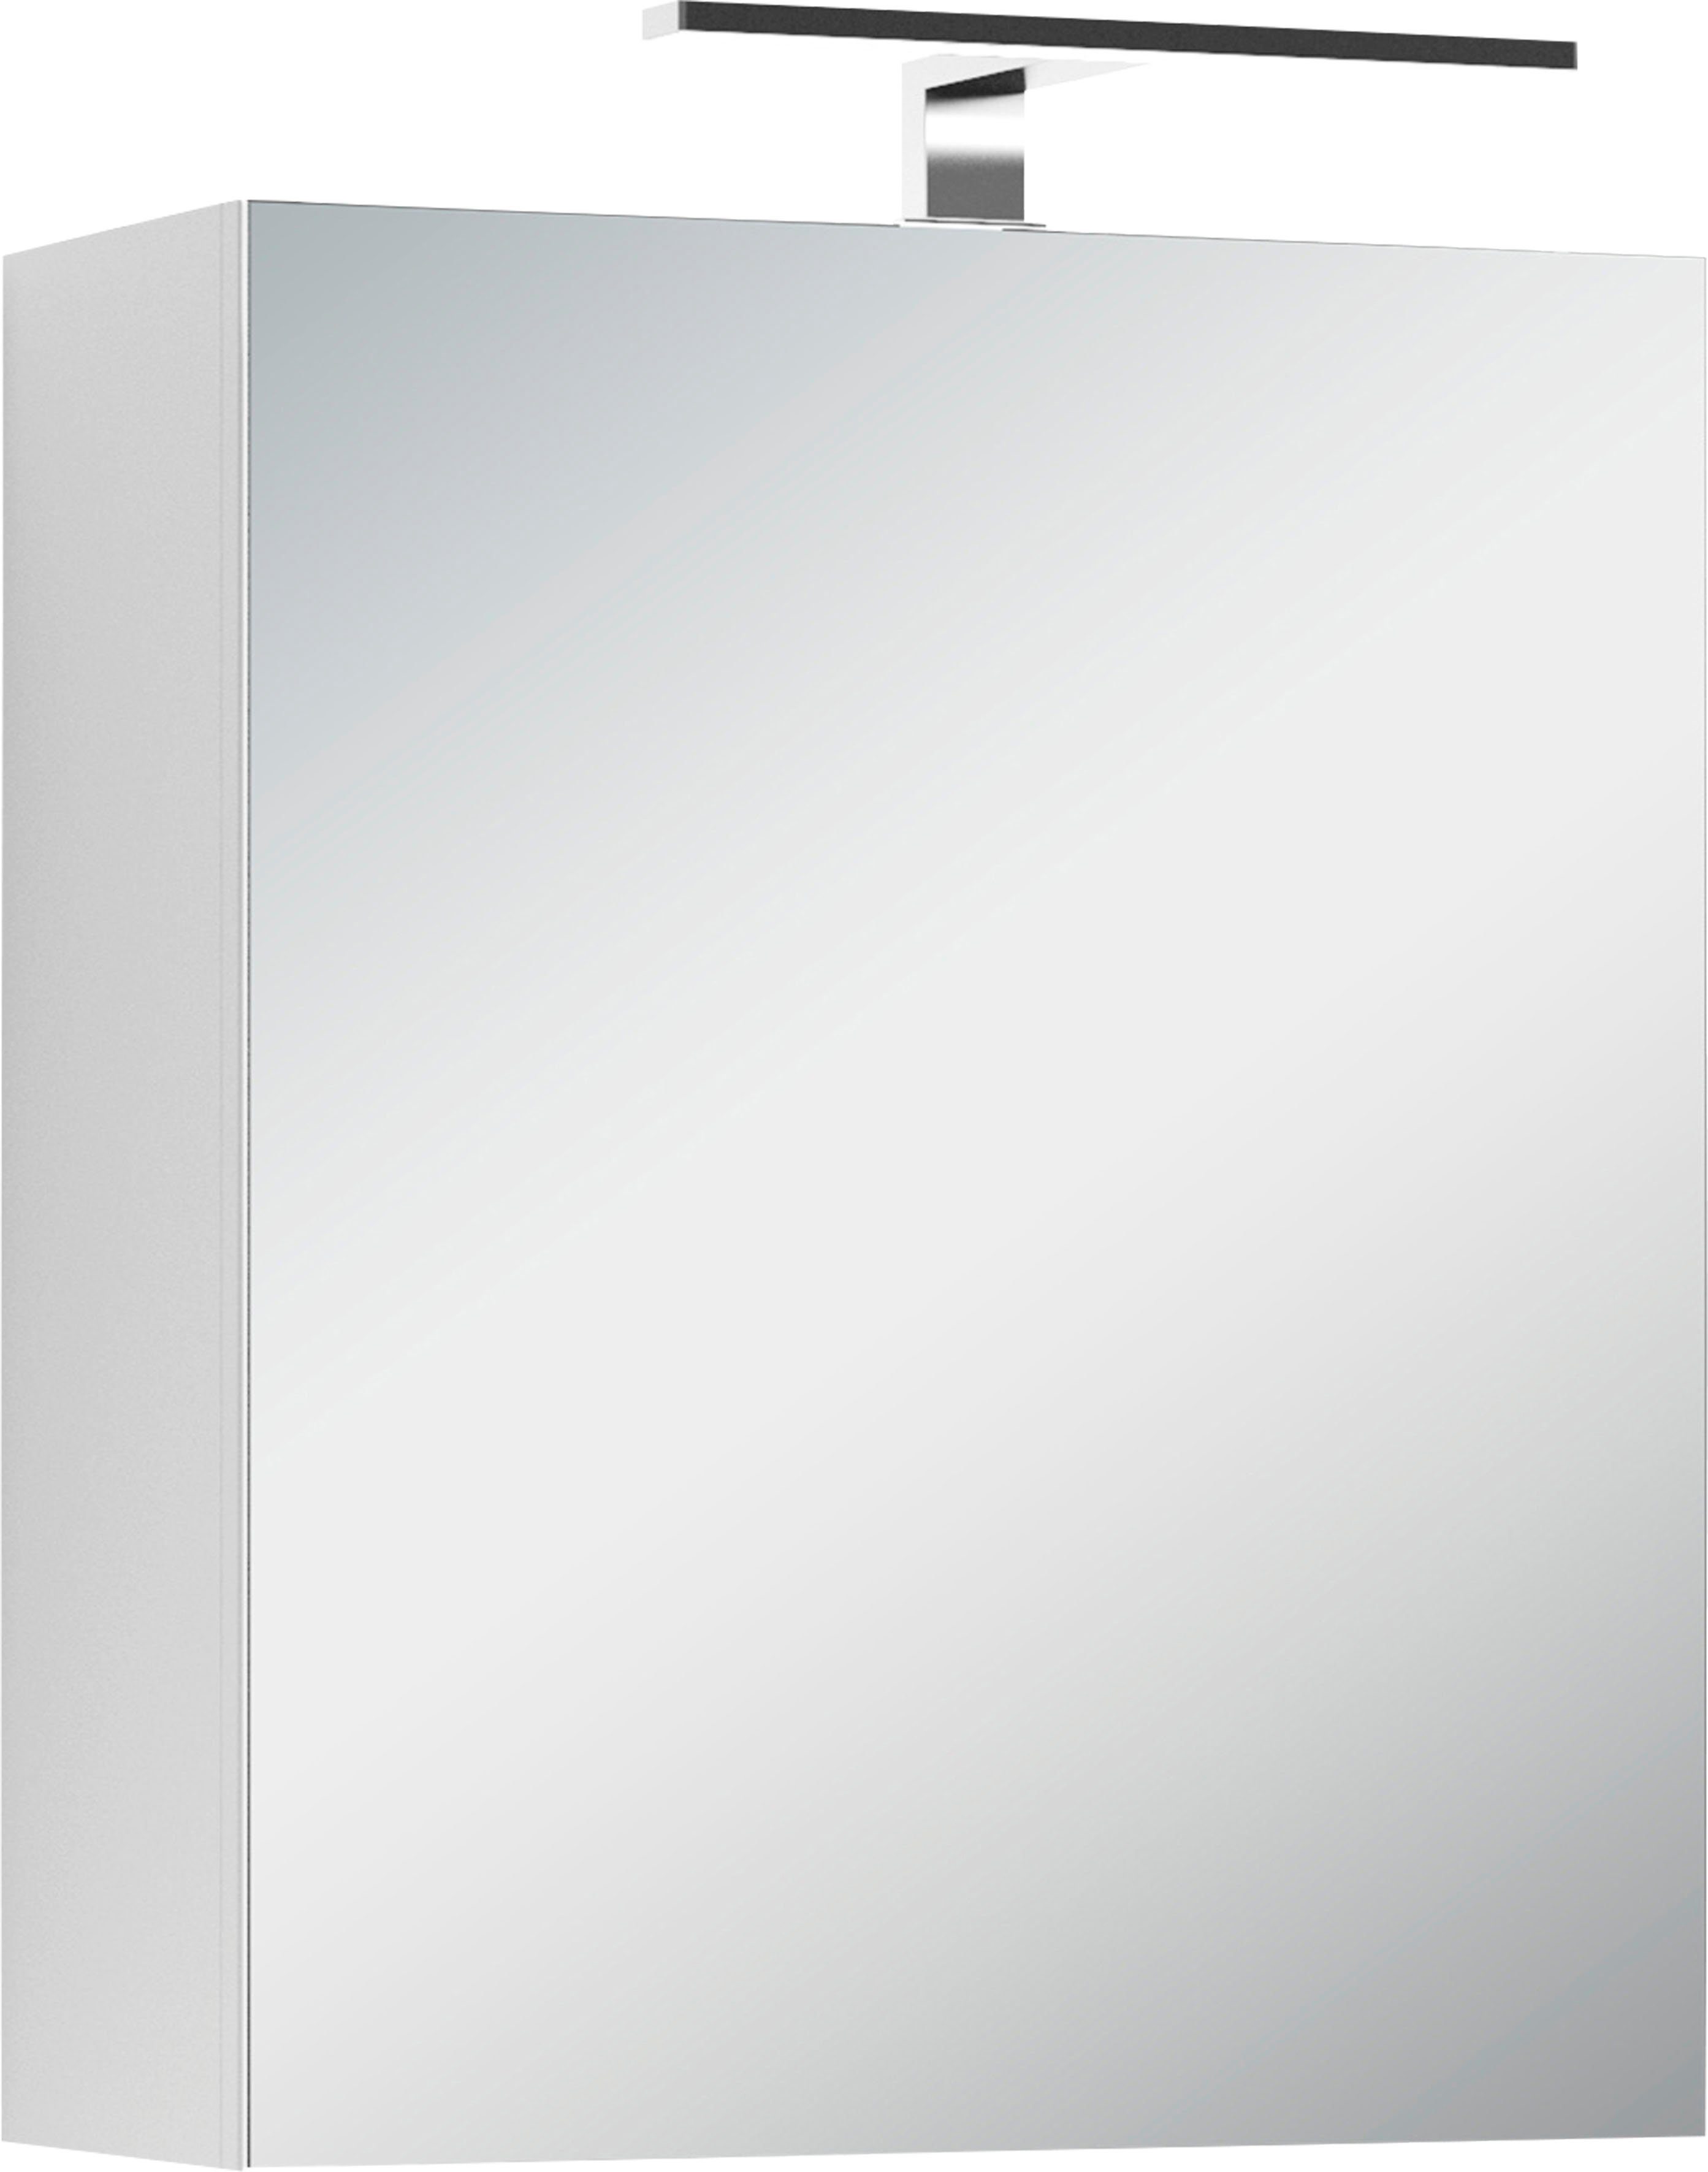 byLIVING Spiegelschrank Spree Breite 50 cm, 1-türig, mit LED Beleuchtung und Schalter-/Steckdosenbox | Spiegelschränke